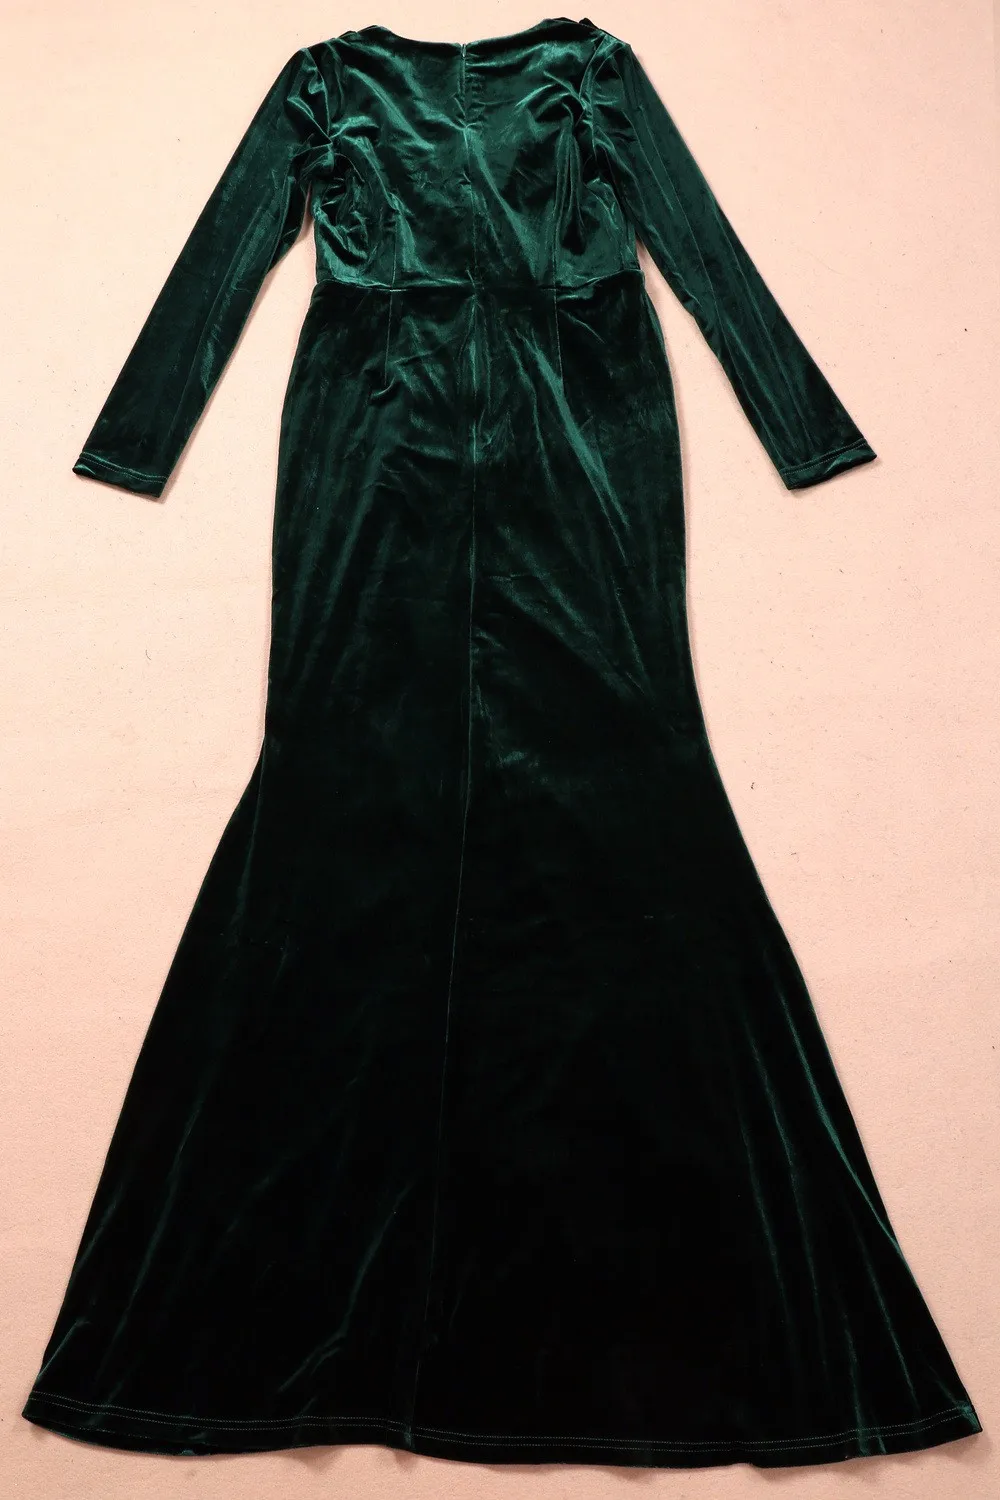 Robe Longue Femme Soiree женское платье, зимнее женское винтажное бархатное платье с длинным рукавом зеленого и красного цвета, Сексуальные вечерние платья макси